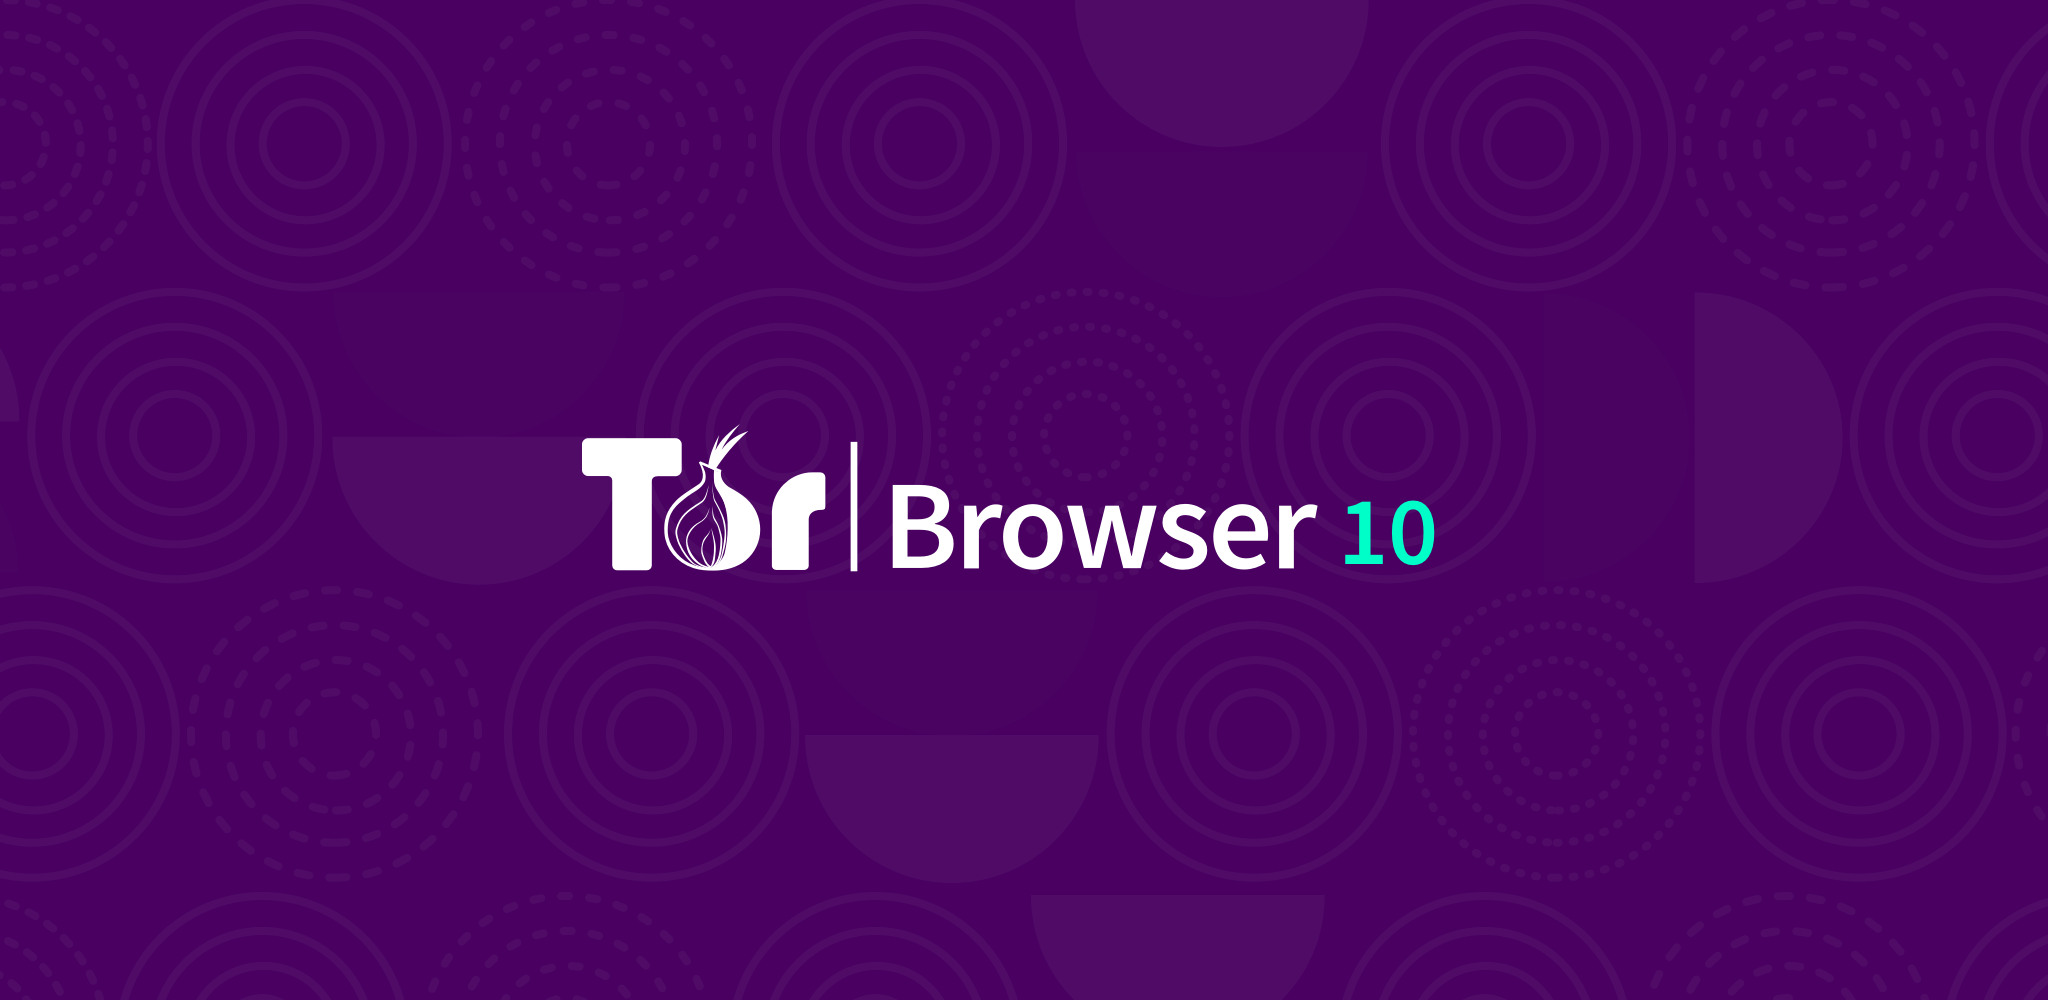 Tor browser как обновить mega скачать и установить бесплатно браузер тор mega